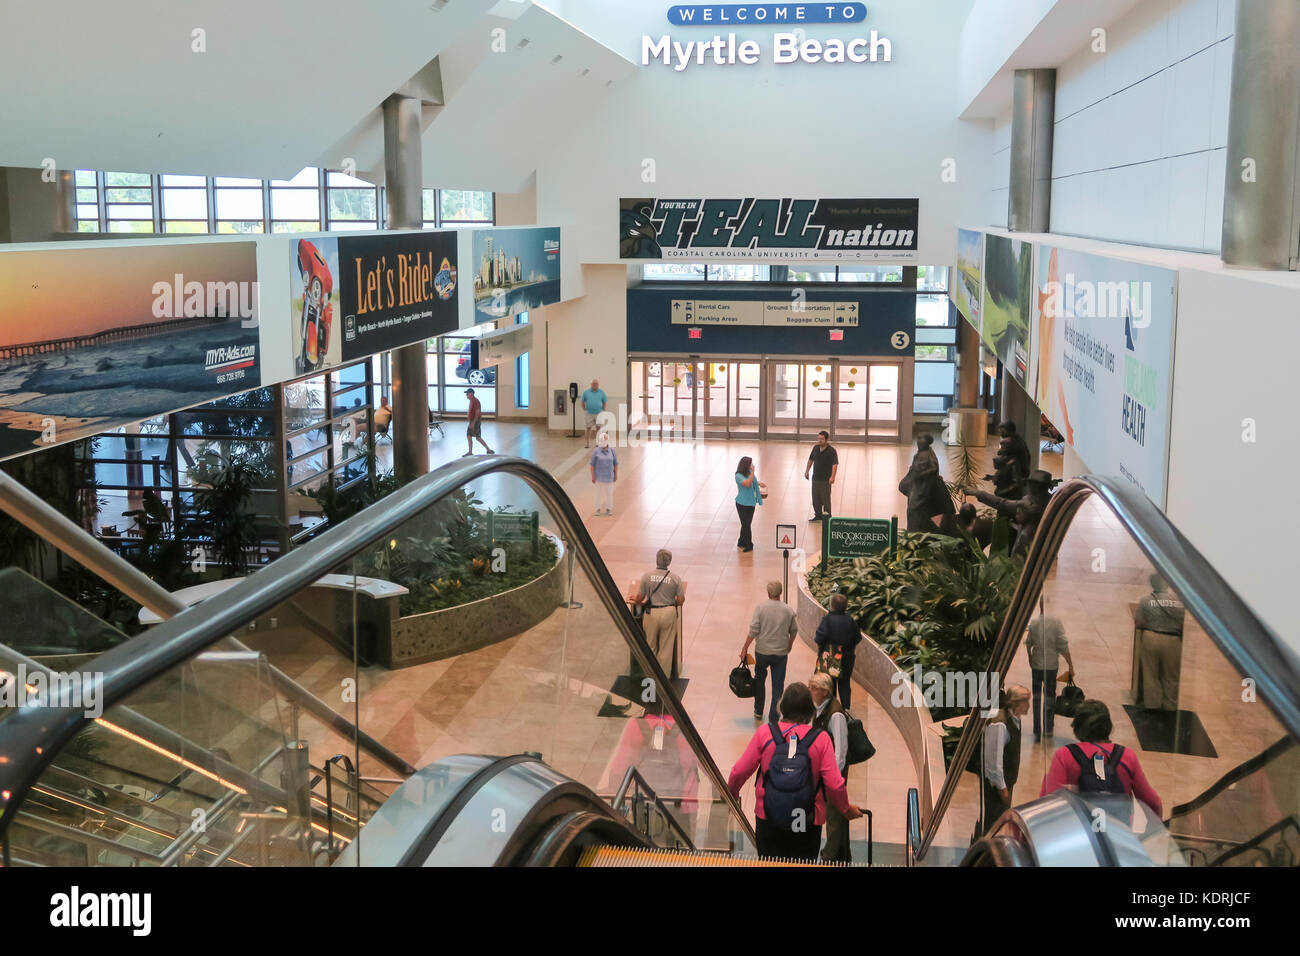 El aeropuerto internacional de Myrtle Beach, Carolina del Sur, EE.UU. Foto de stock